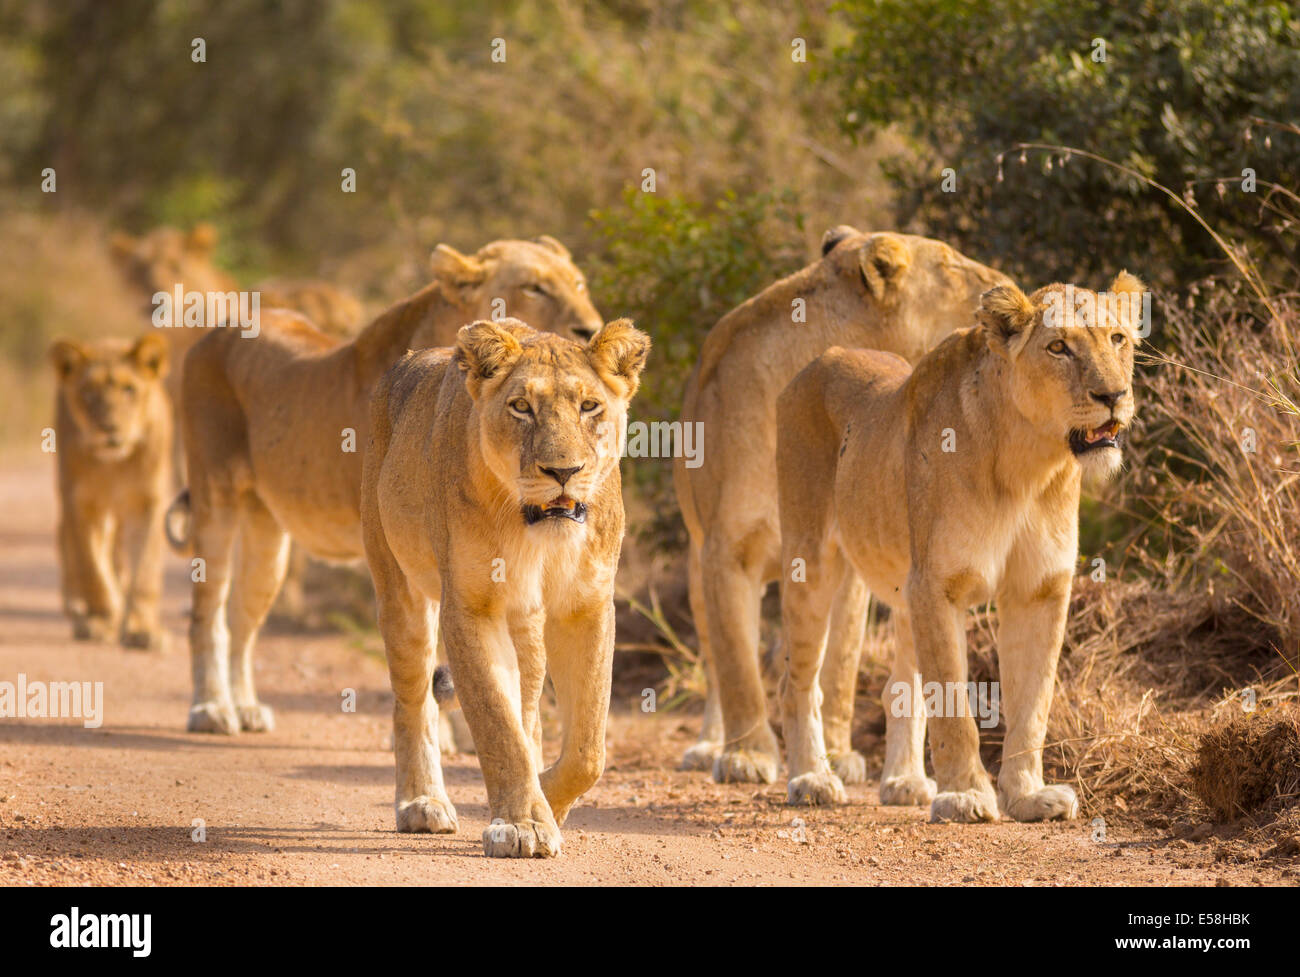 Krüger-Nationalpark, Südafrika - Rudel Löwen jagen in der Nähe von Biyamiti Camp. Panthera leo Stockfoto